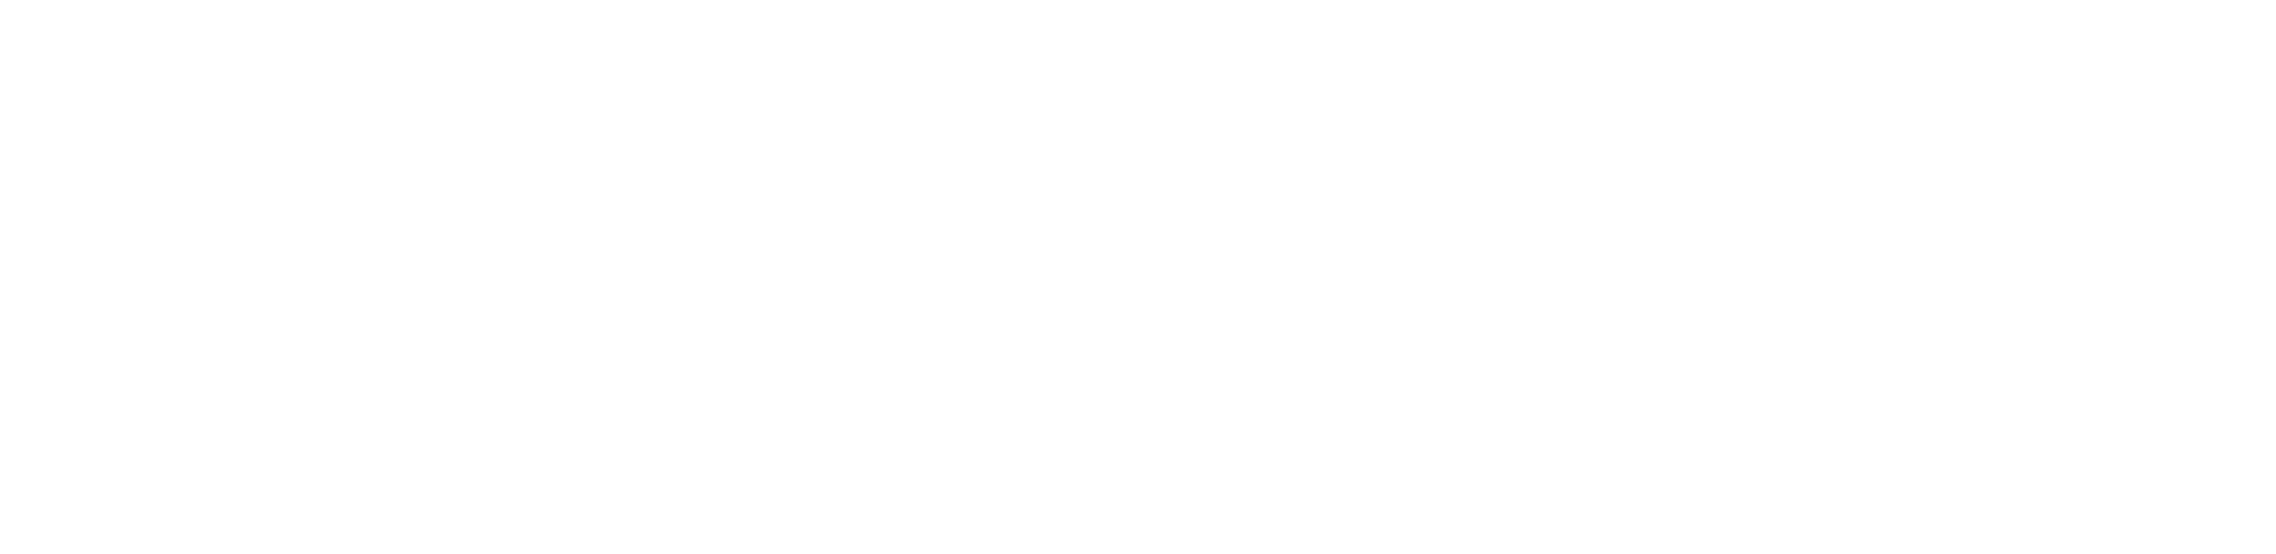 Yves Timmermann Fotogorafie